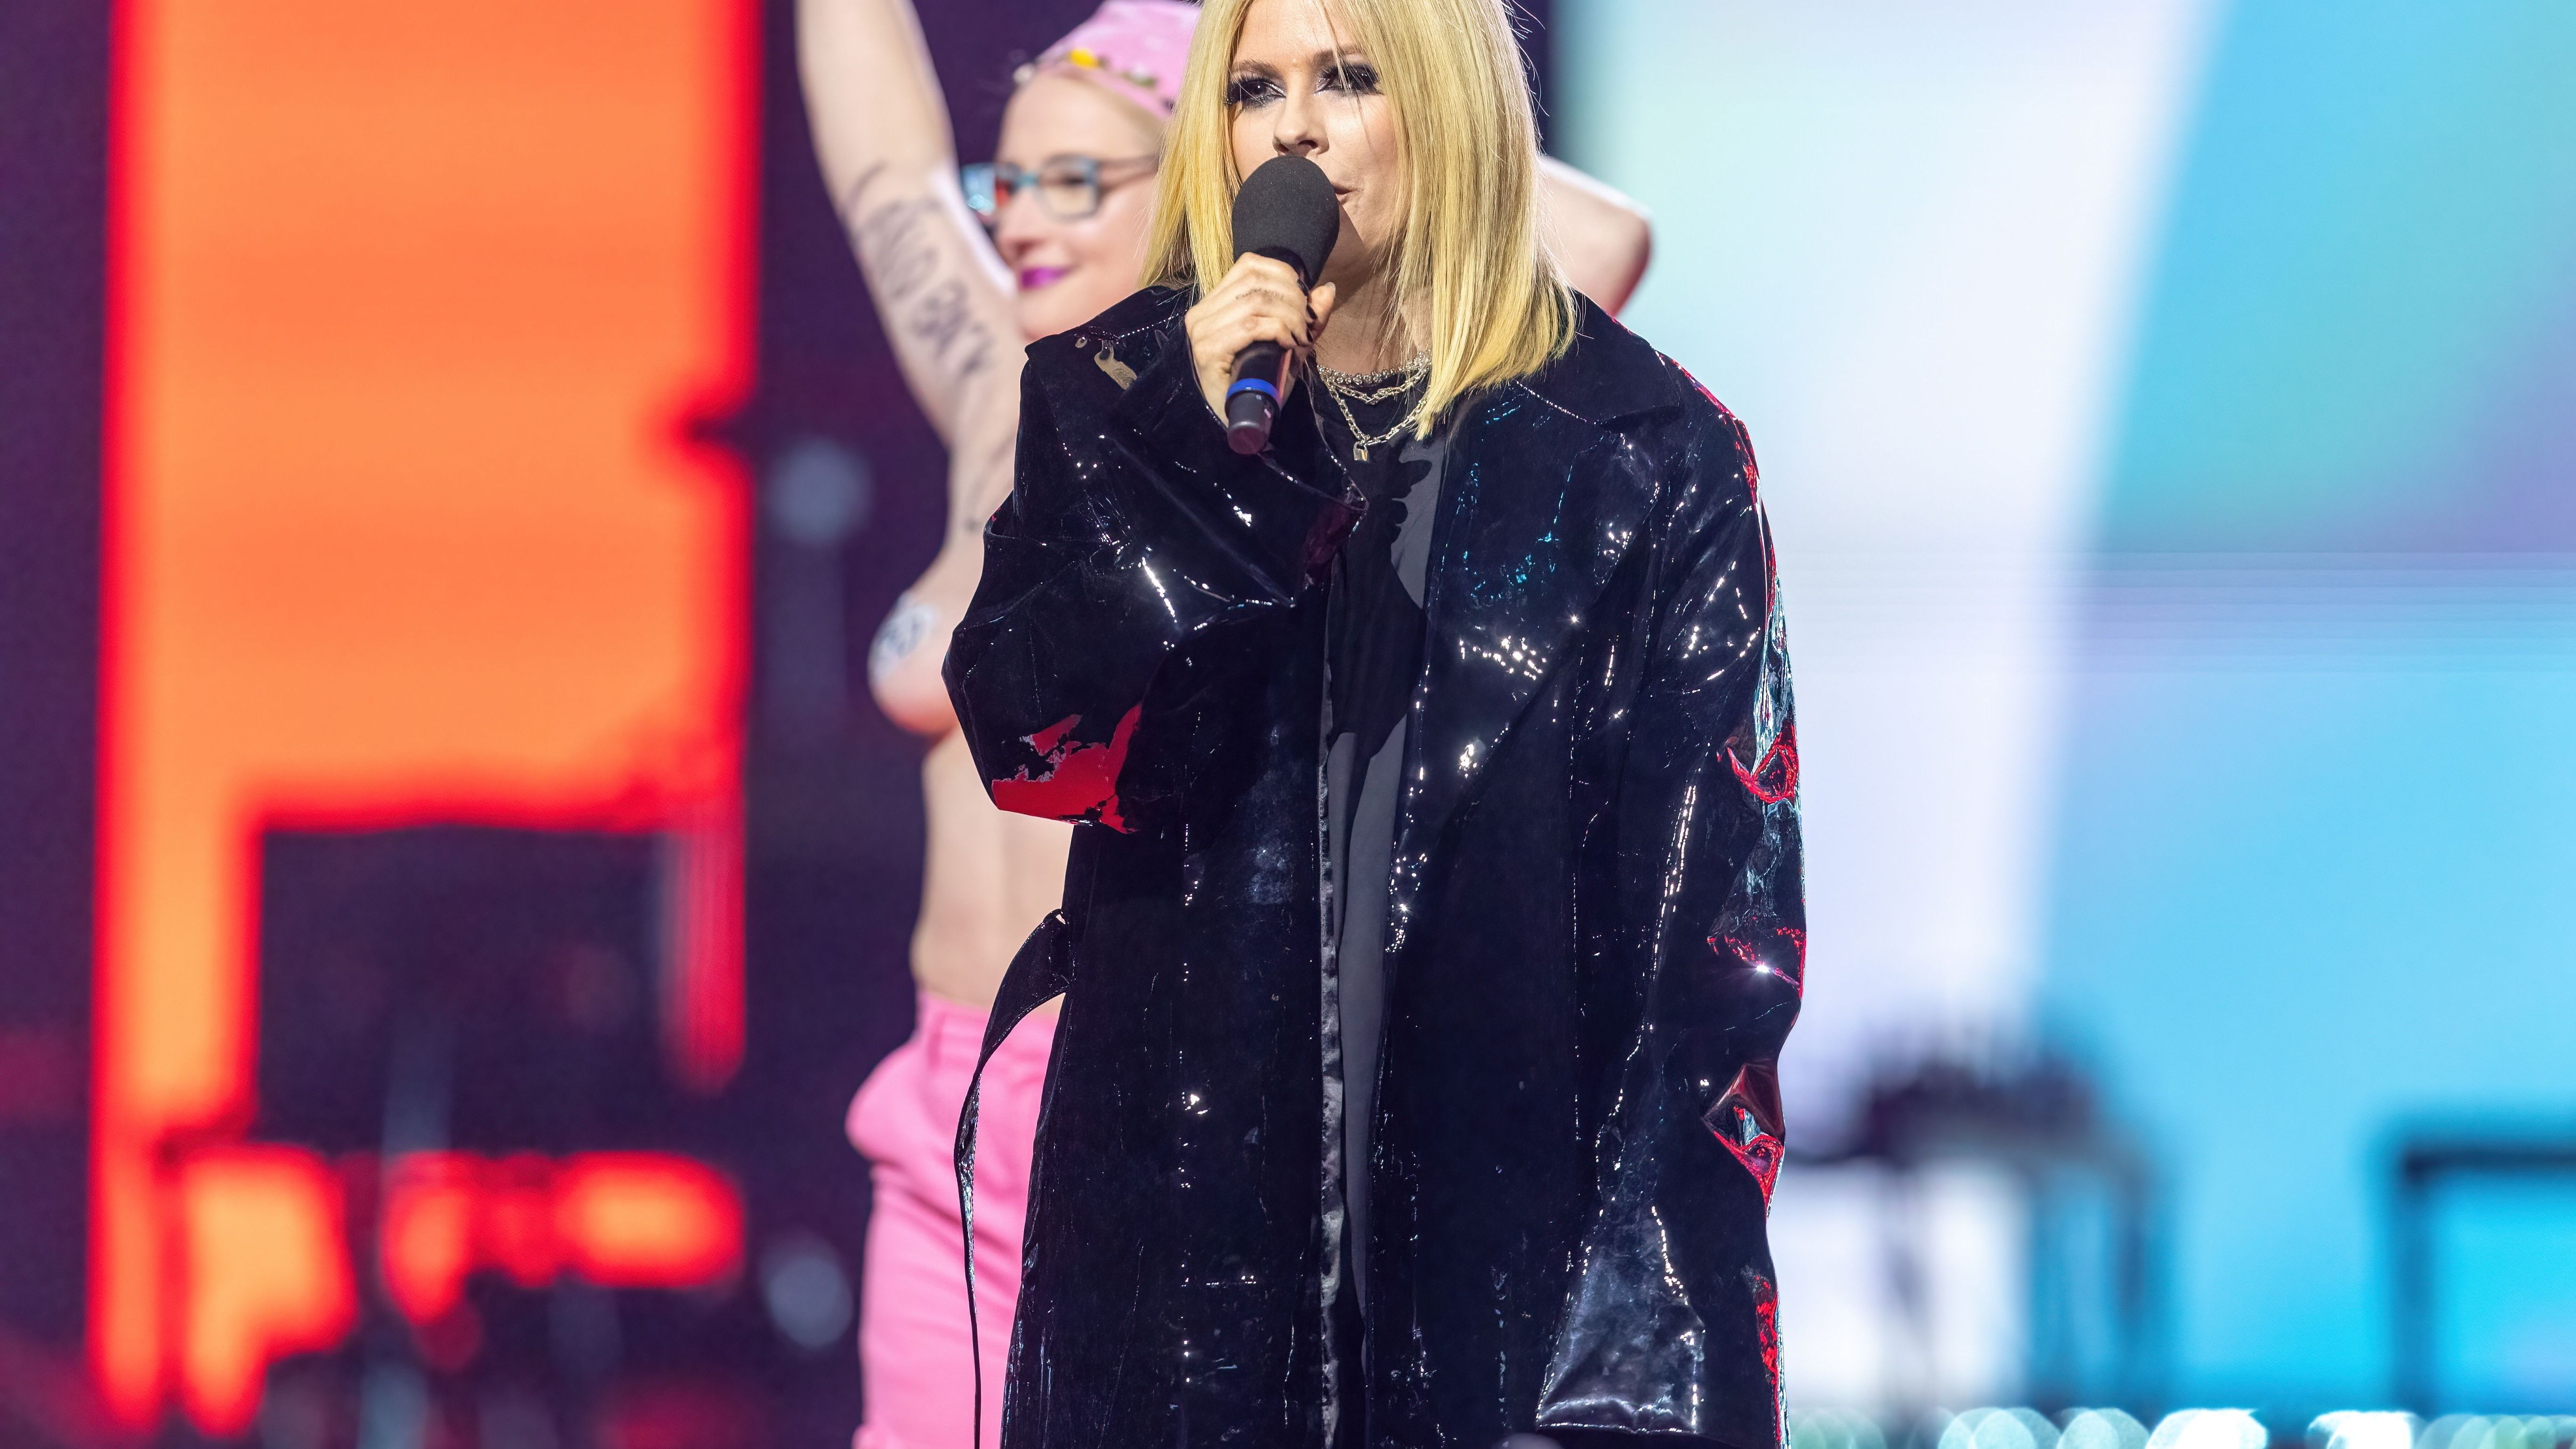 Avril wurde auf der Bühne plötzlich von einer halbbackten Klimaaktivistin überrascht: Ihre Reaktion macht die Fans sauer